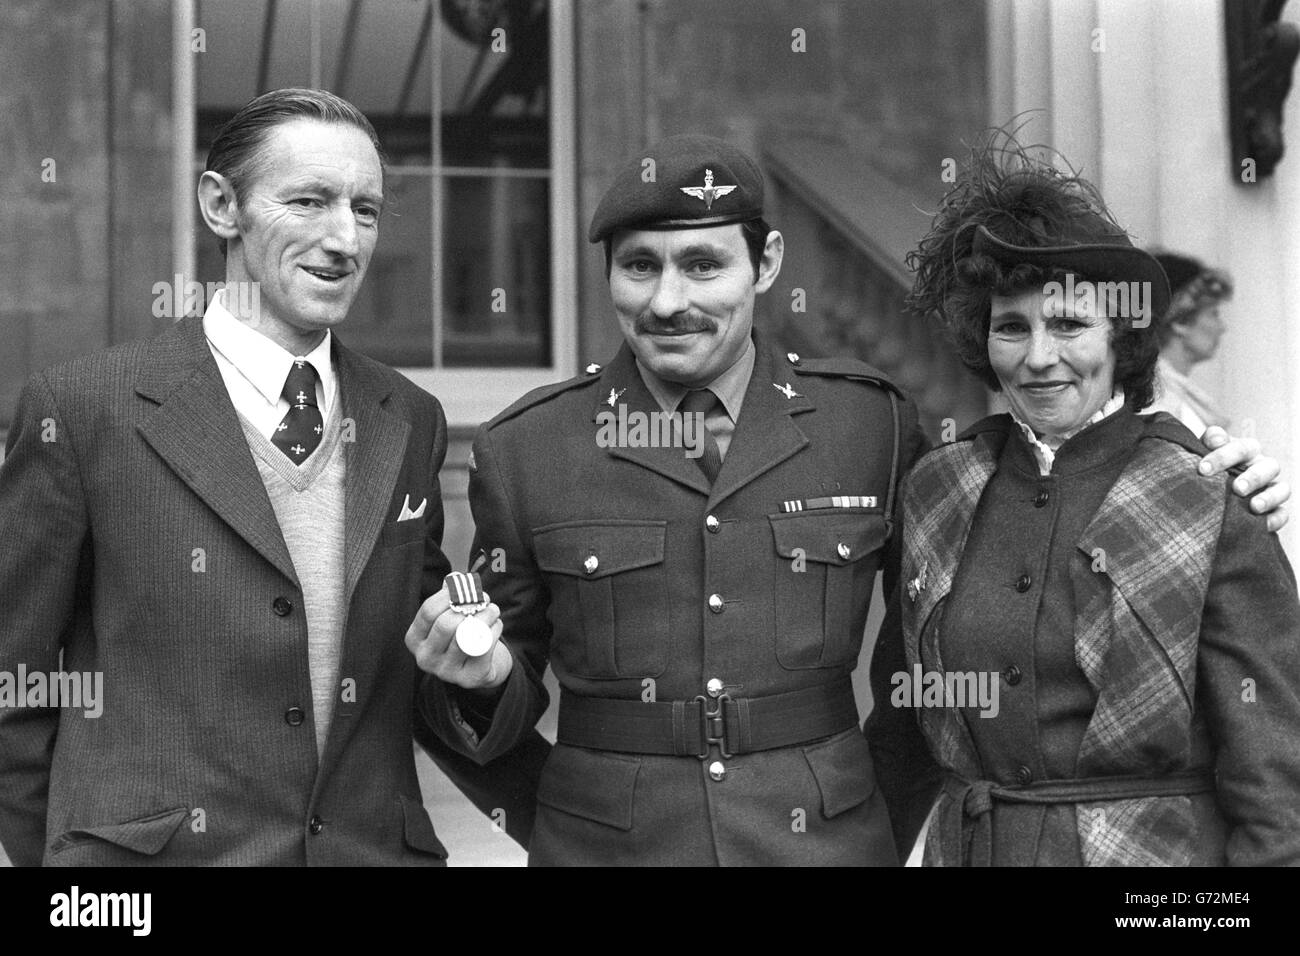 L/CPL Martin Bentley, del reggimento paracadute, con i suoi genitori dopo aver raccolto la Medaglia militare dalla Regina per gallantry nella guerra delle Falklands. Foto Stock